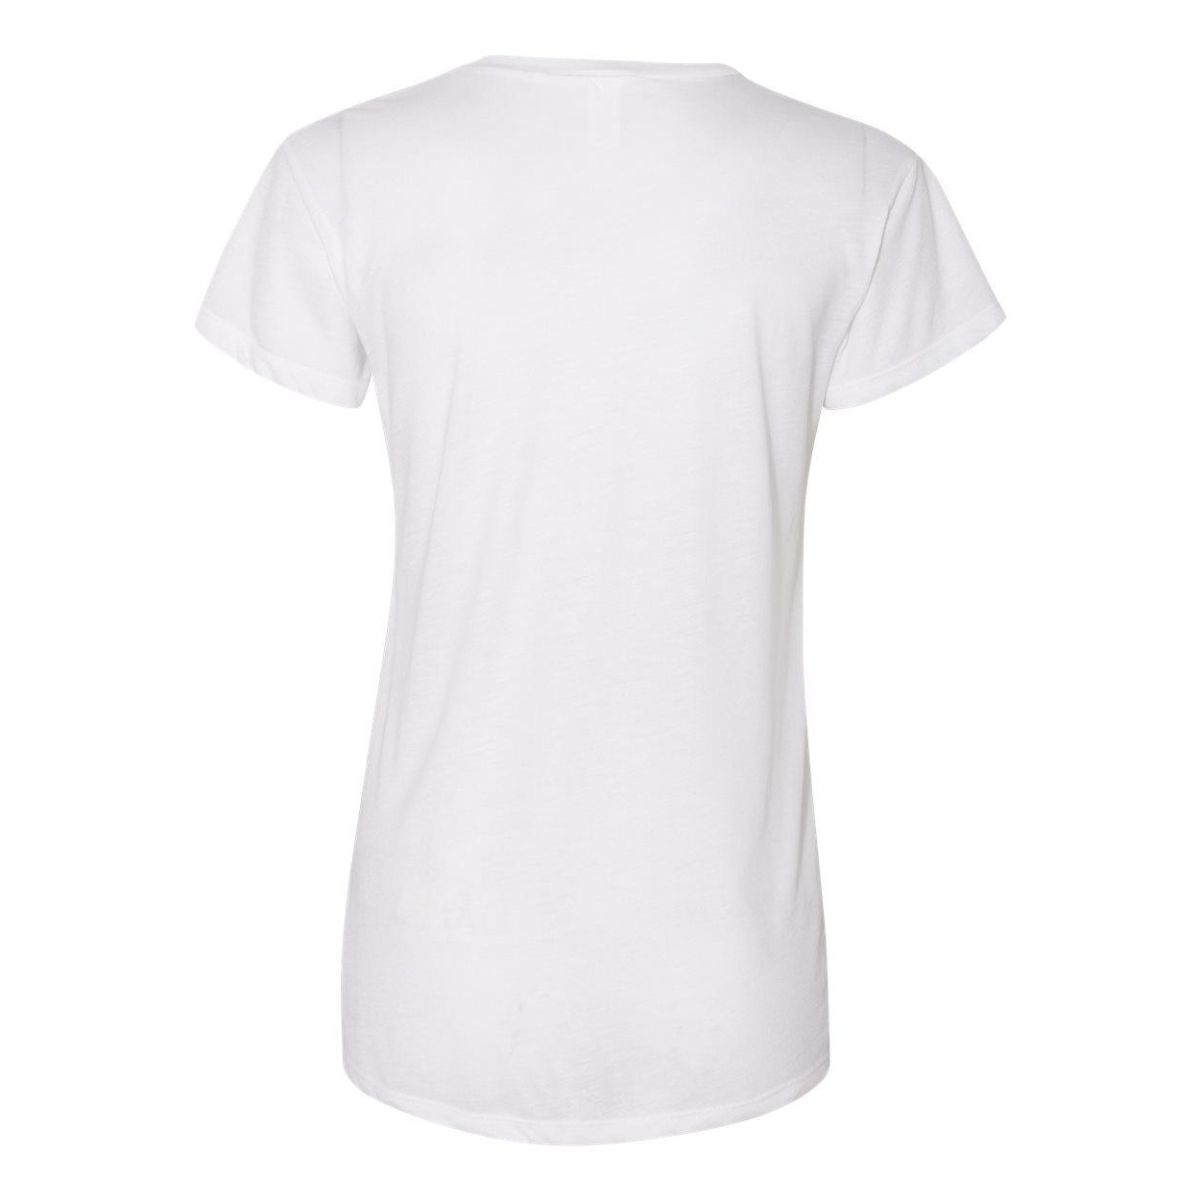 Альтернативная женская обтягивающая футболка Kimber из джерси Alternative